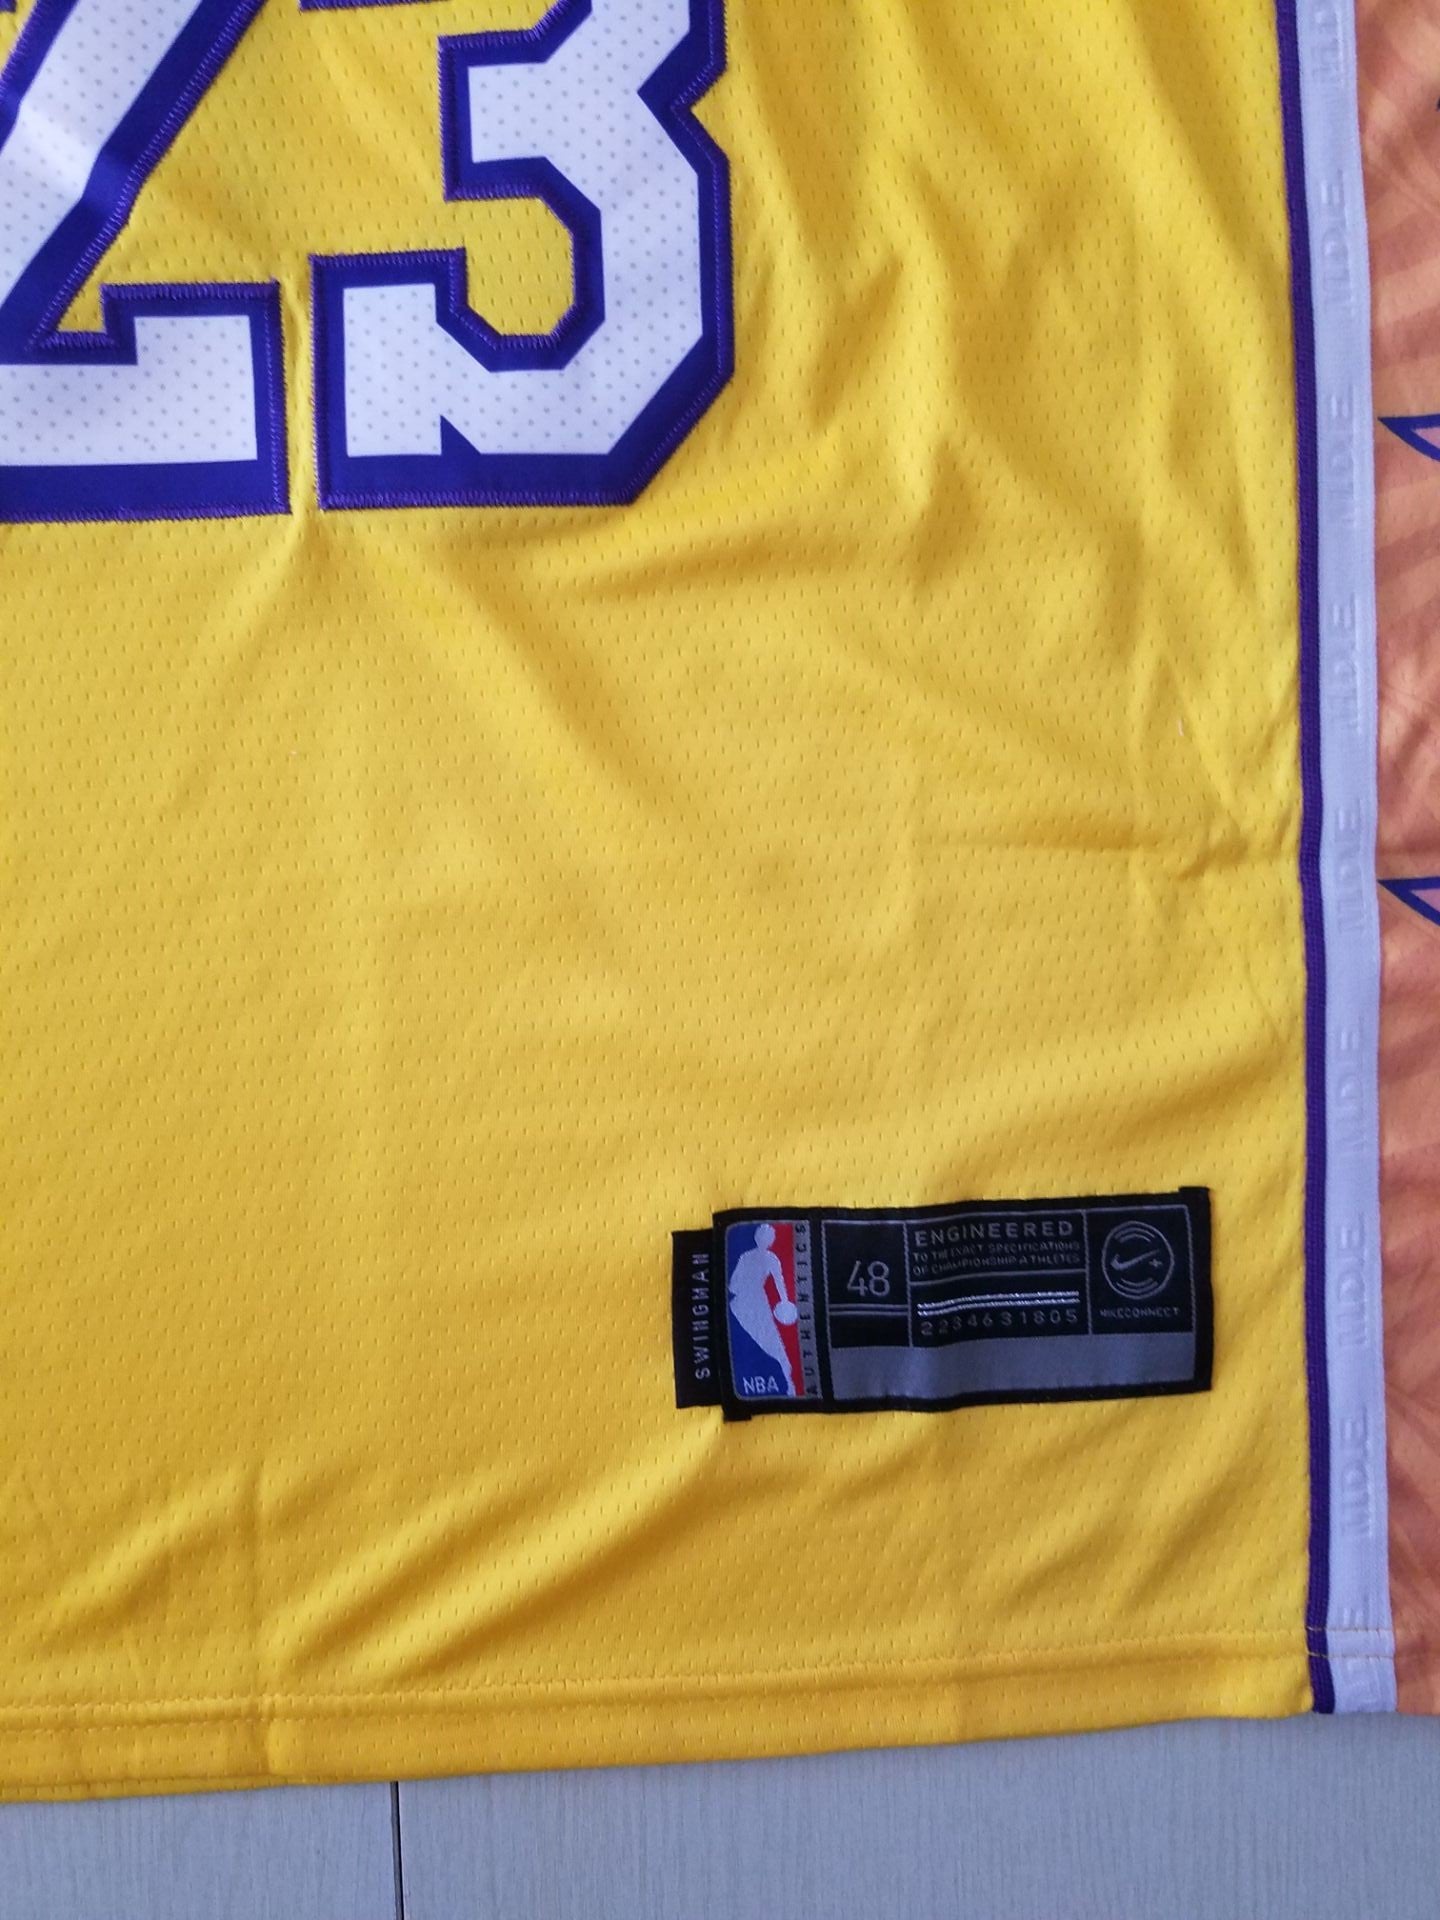 Gelbes Swingman-Trikot der Los Angeles Lakers LeBron James #23 für Herren